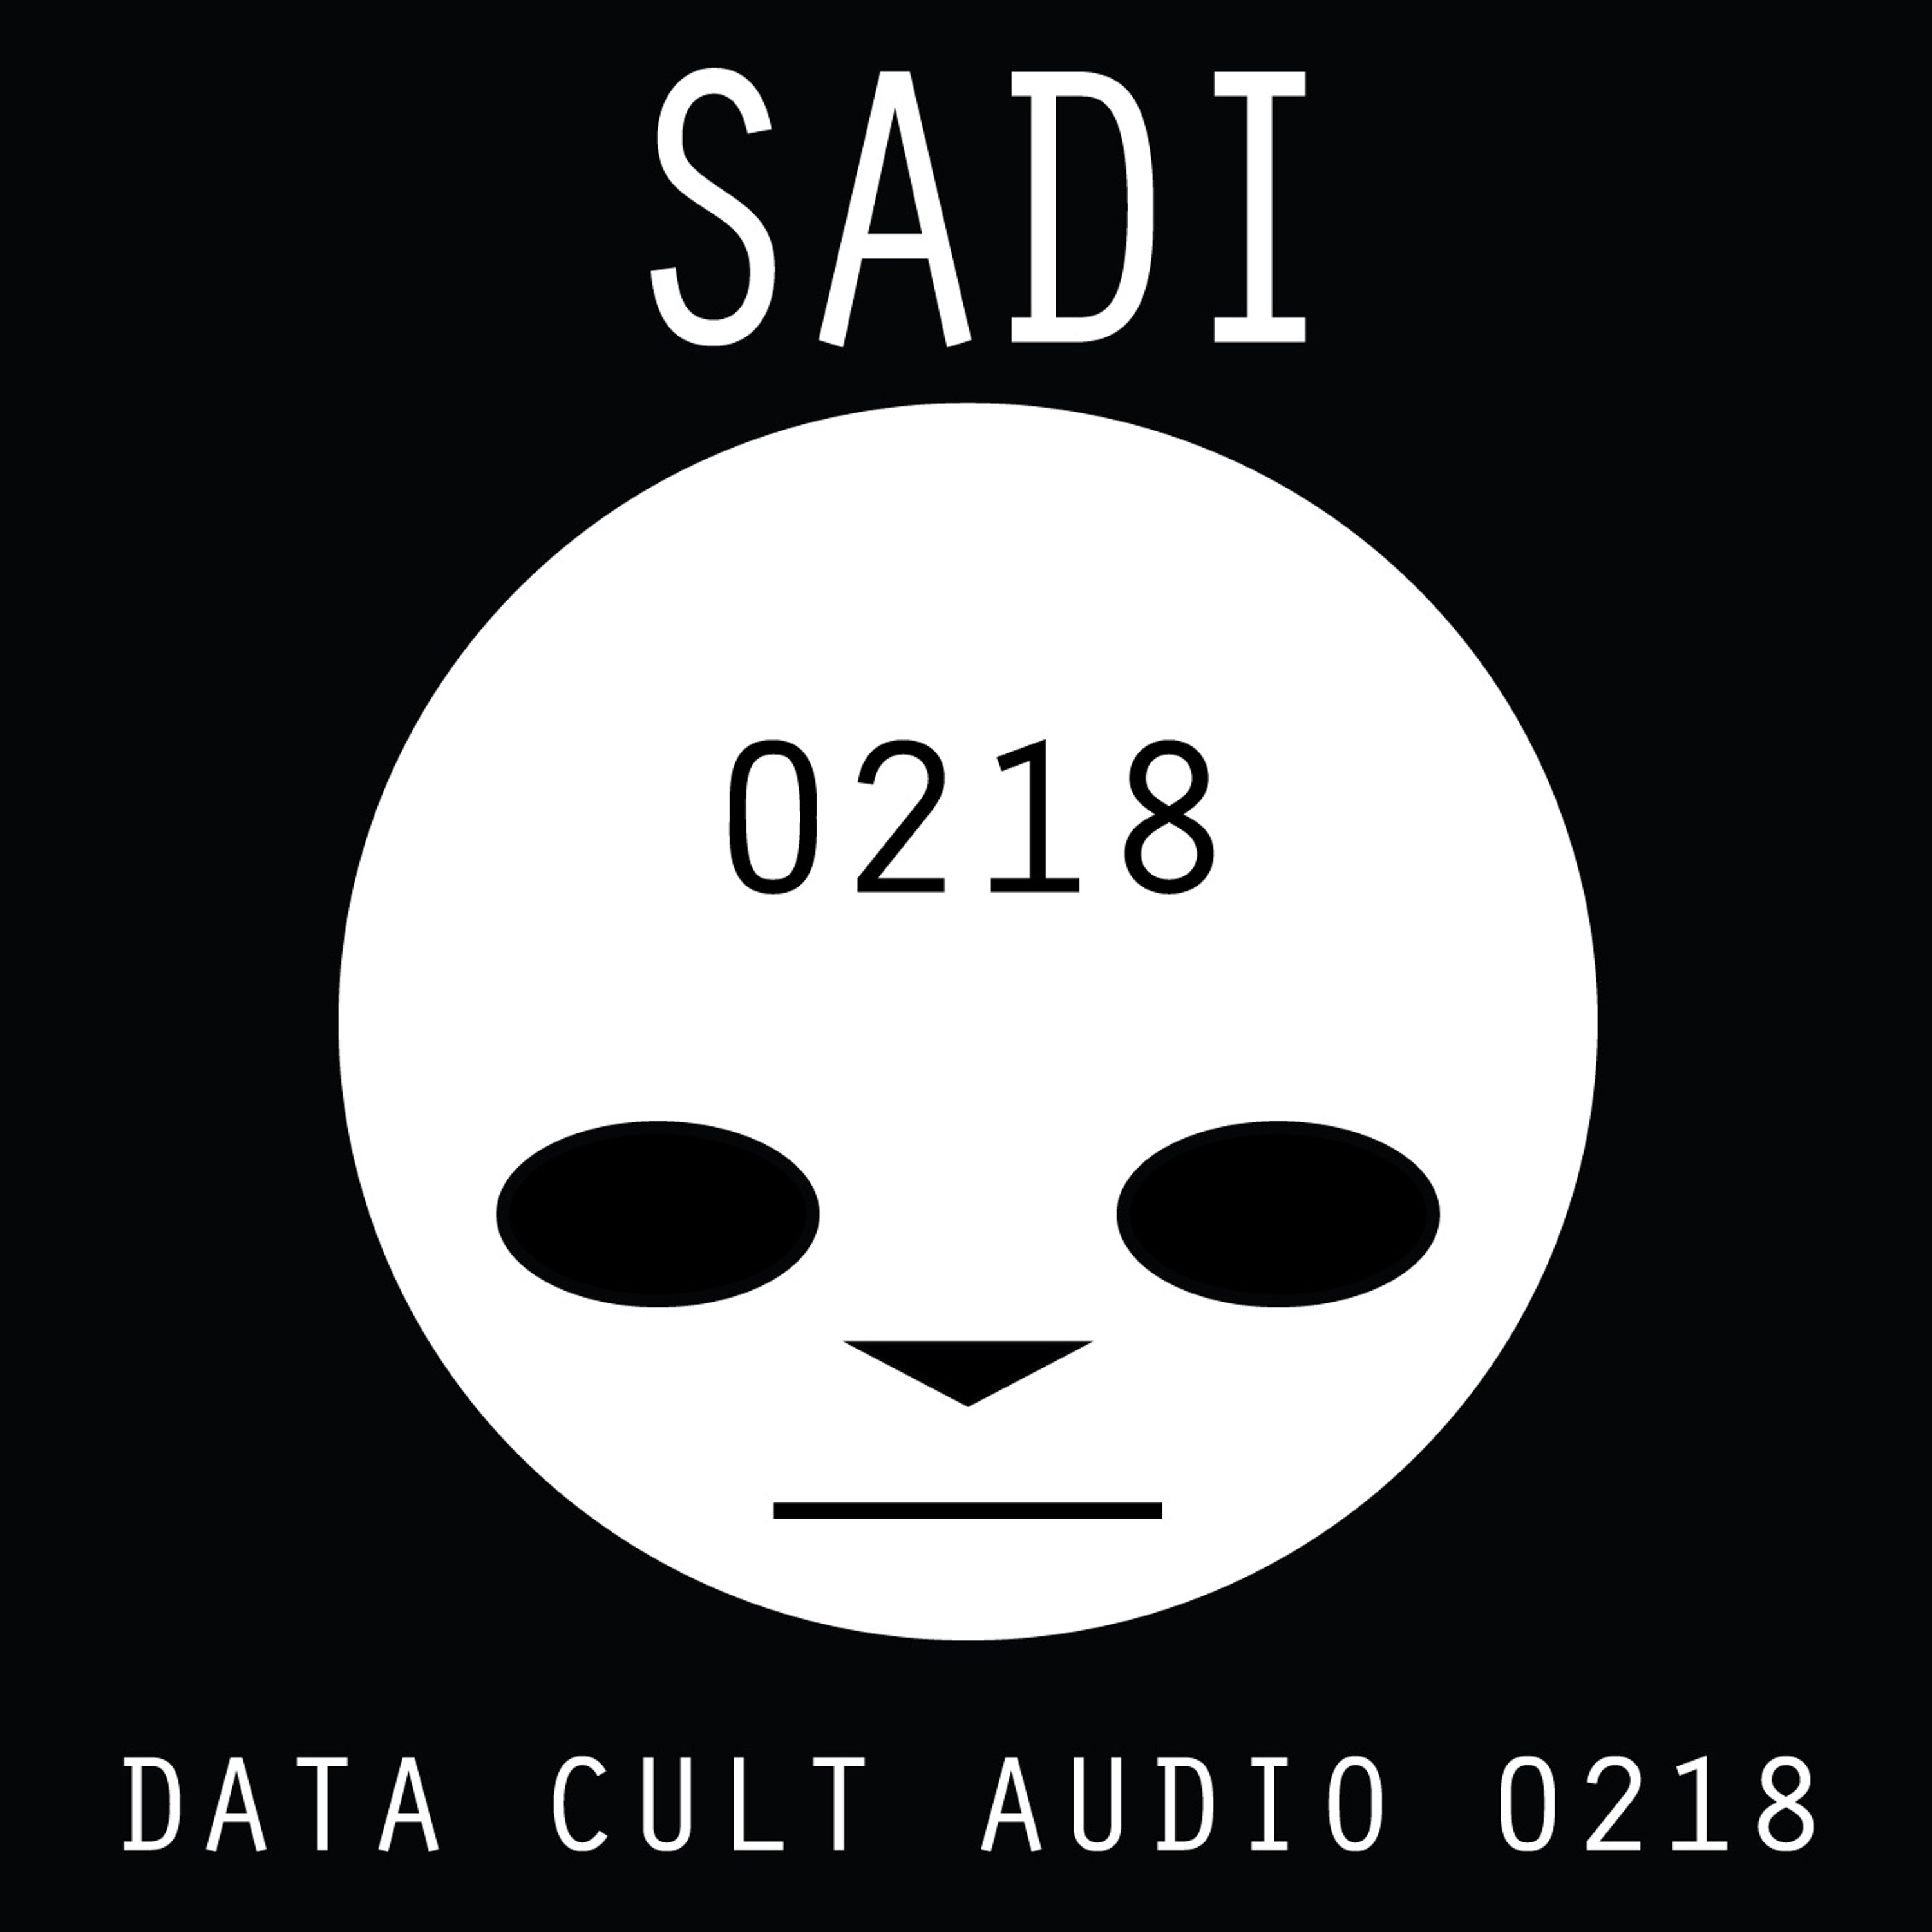 Data Cult Audio 0218 - Sadi